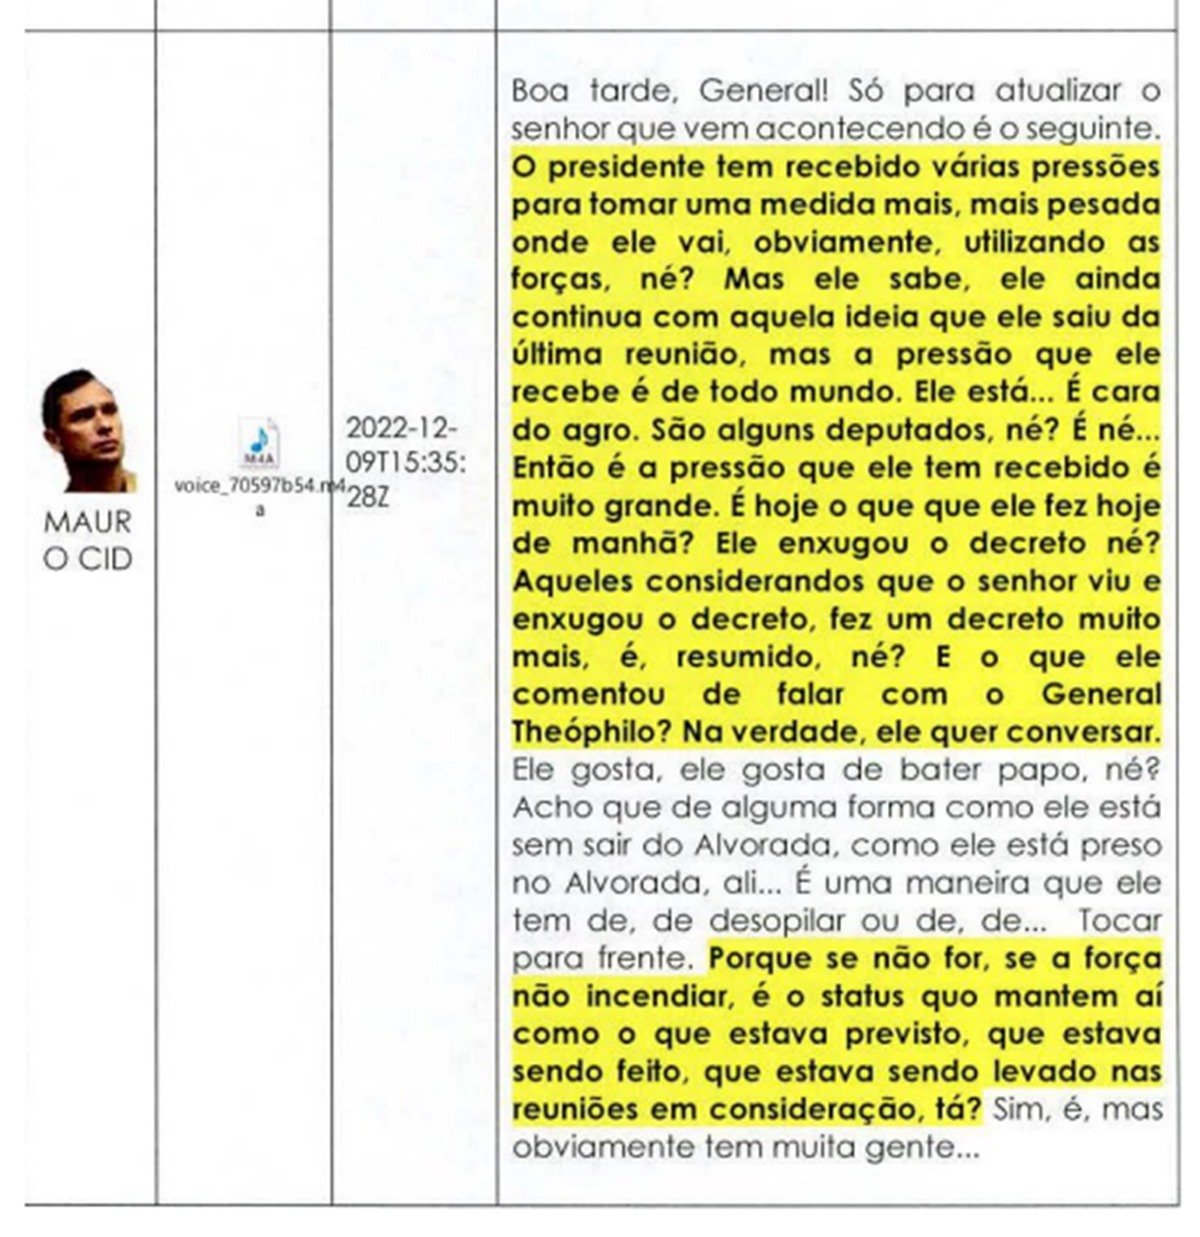 Diálogo entre militares sobre influência de Bolsonaro em minuta do golpe